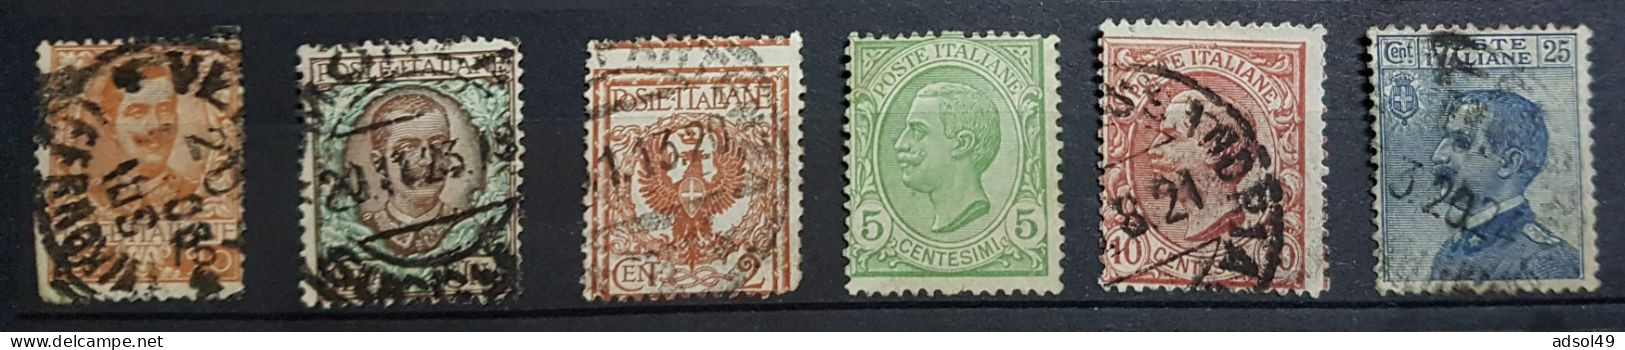 Italia 1879 à 1908 - 6 Timbres Oblitérés - 6 Bolli Usati - Oblitérés